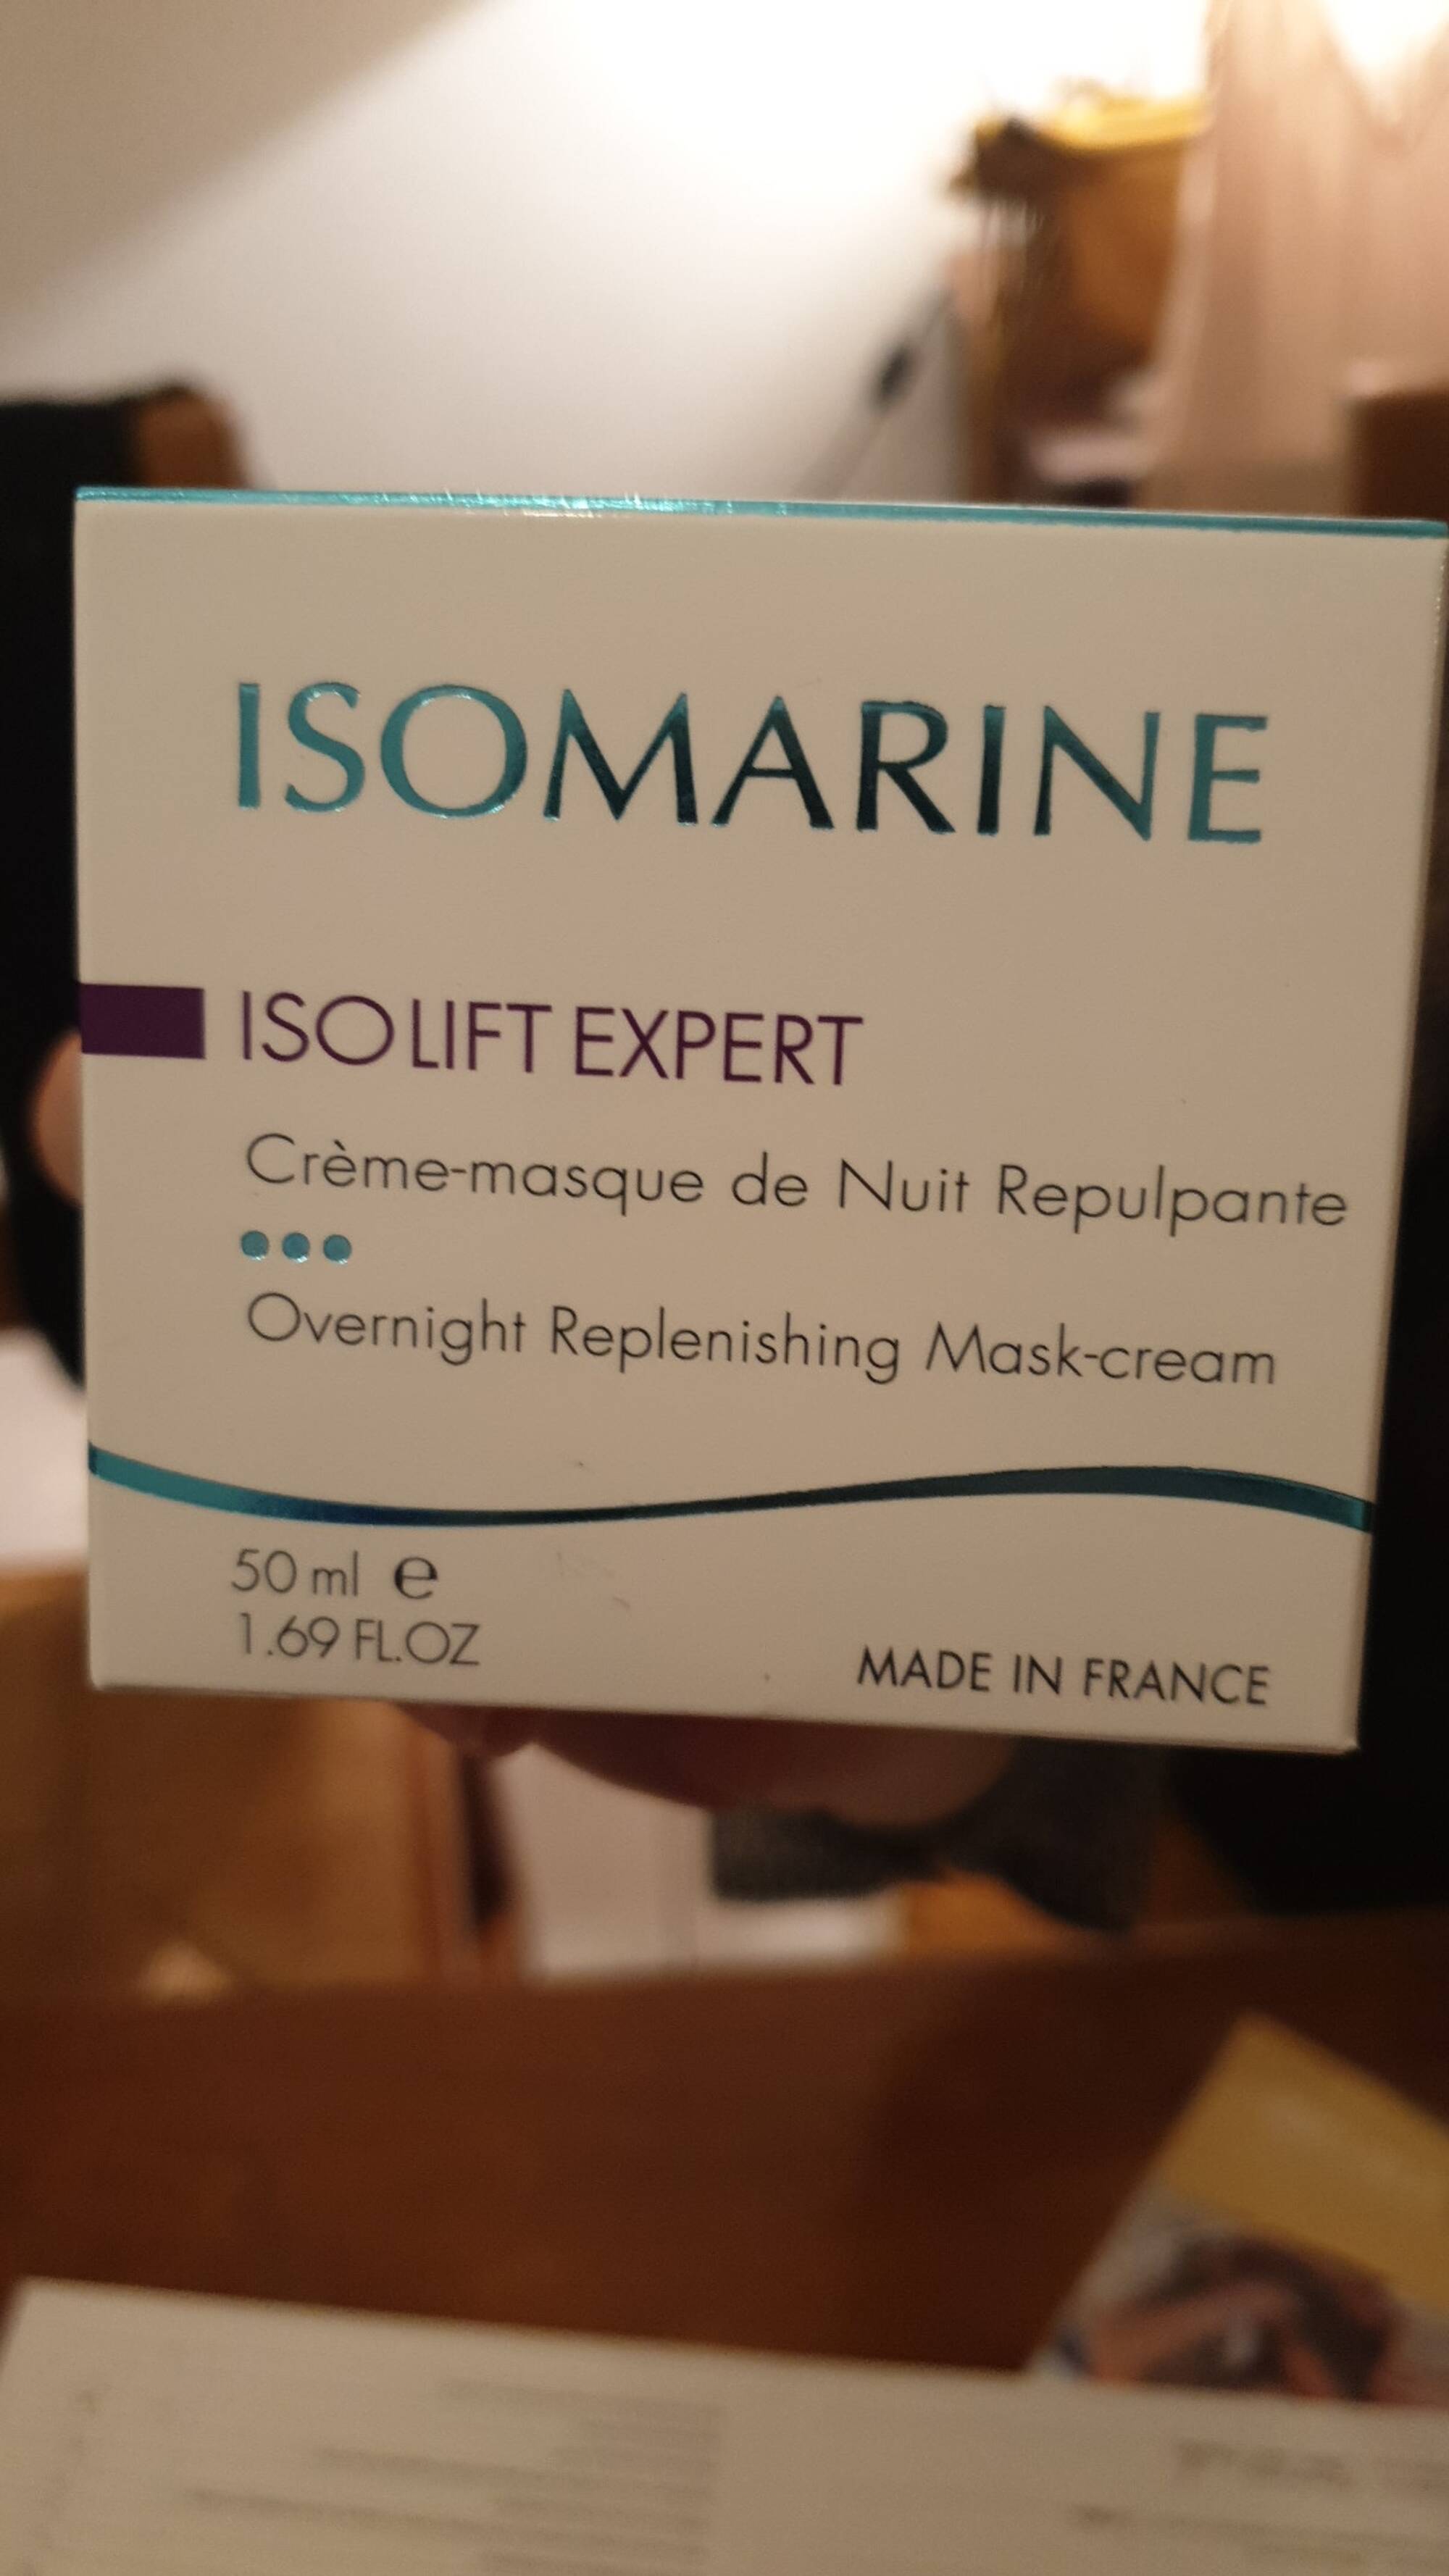 ISOMARINE - Isolift expert - Crème masque de nuit répulpante